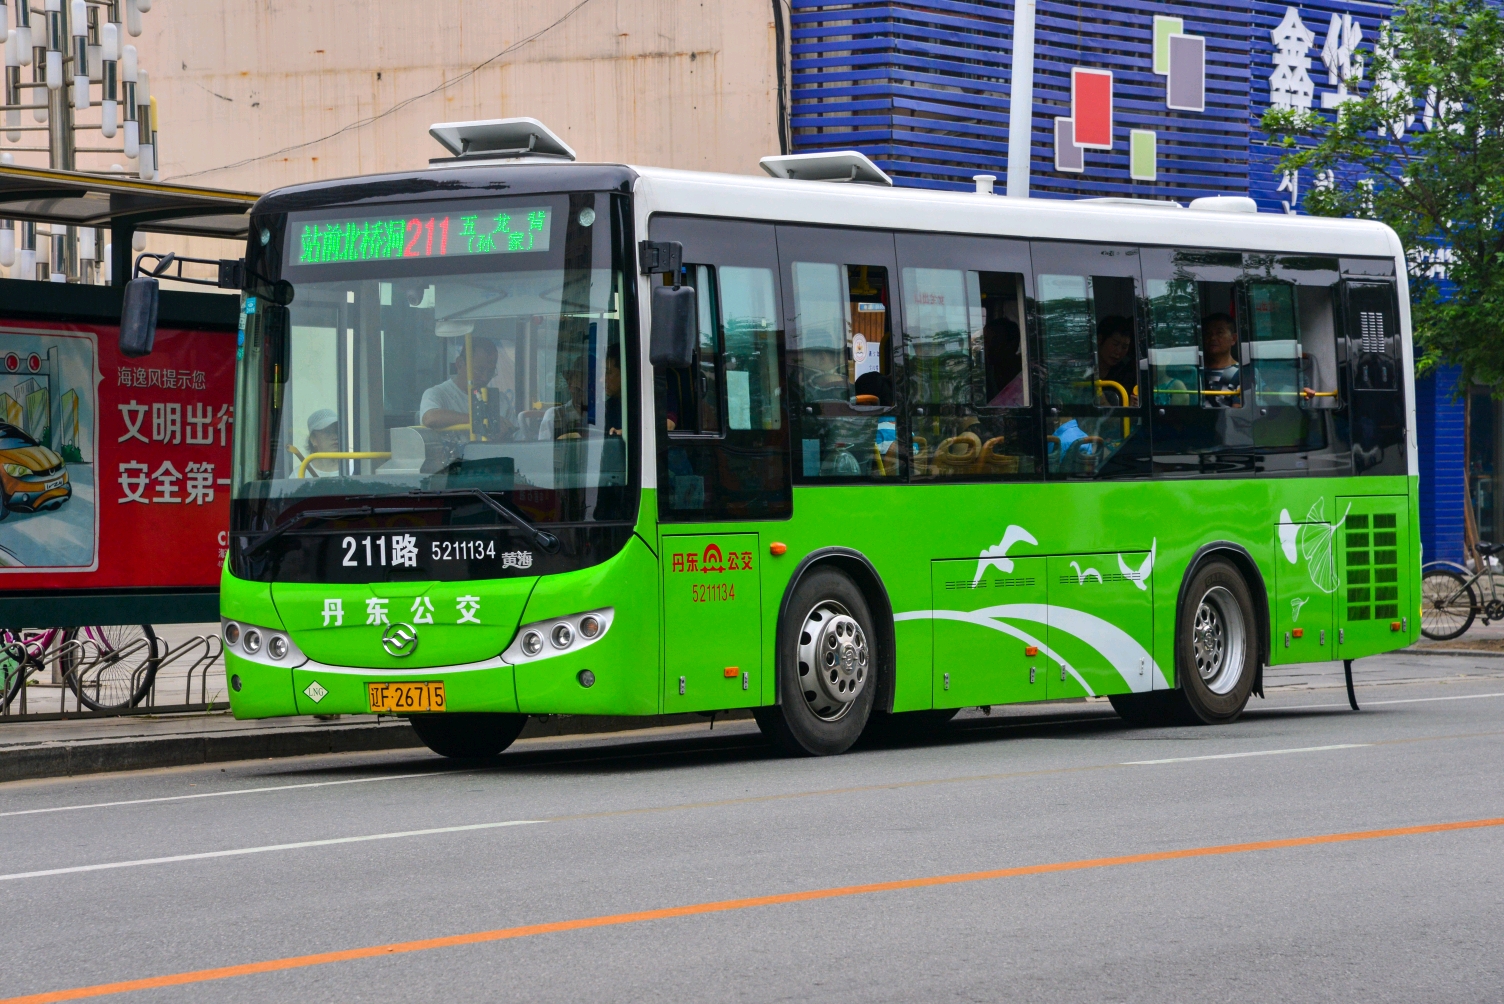 丹东公交(丹东市公交总公司)线路配车概况及图集(三)截至2020.